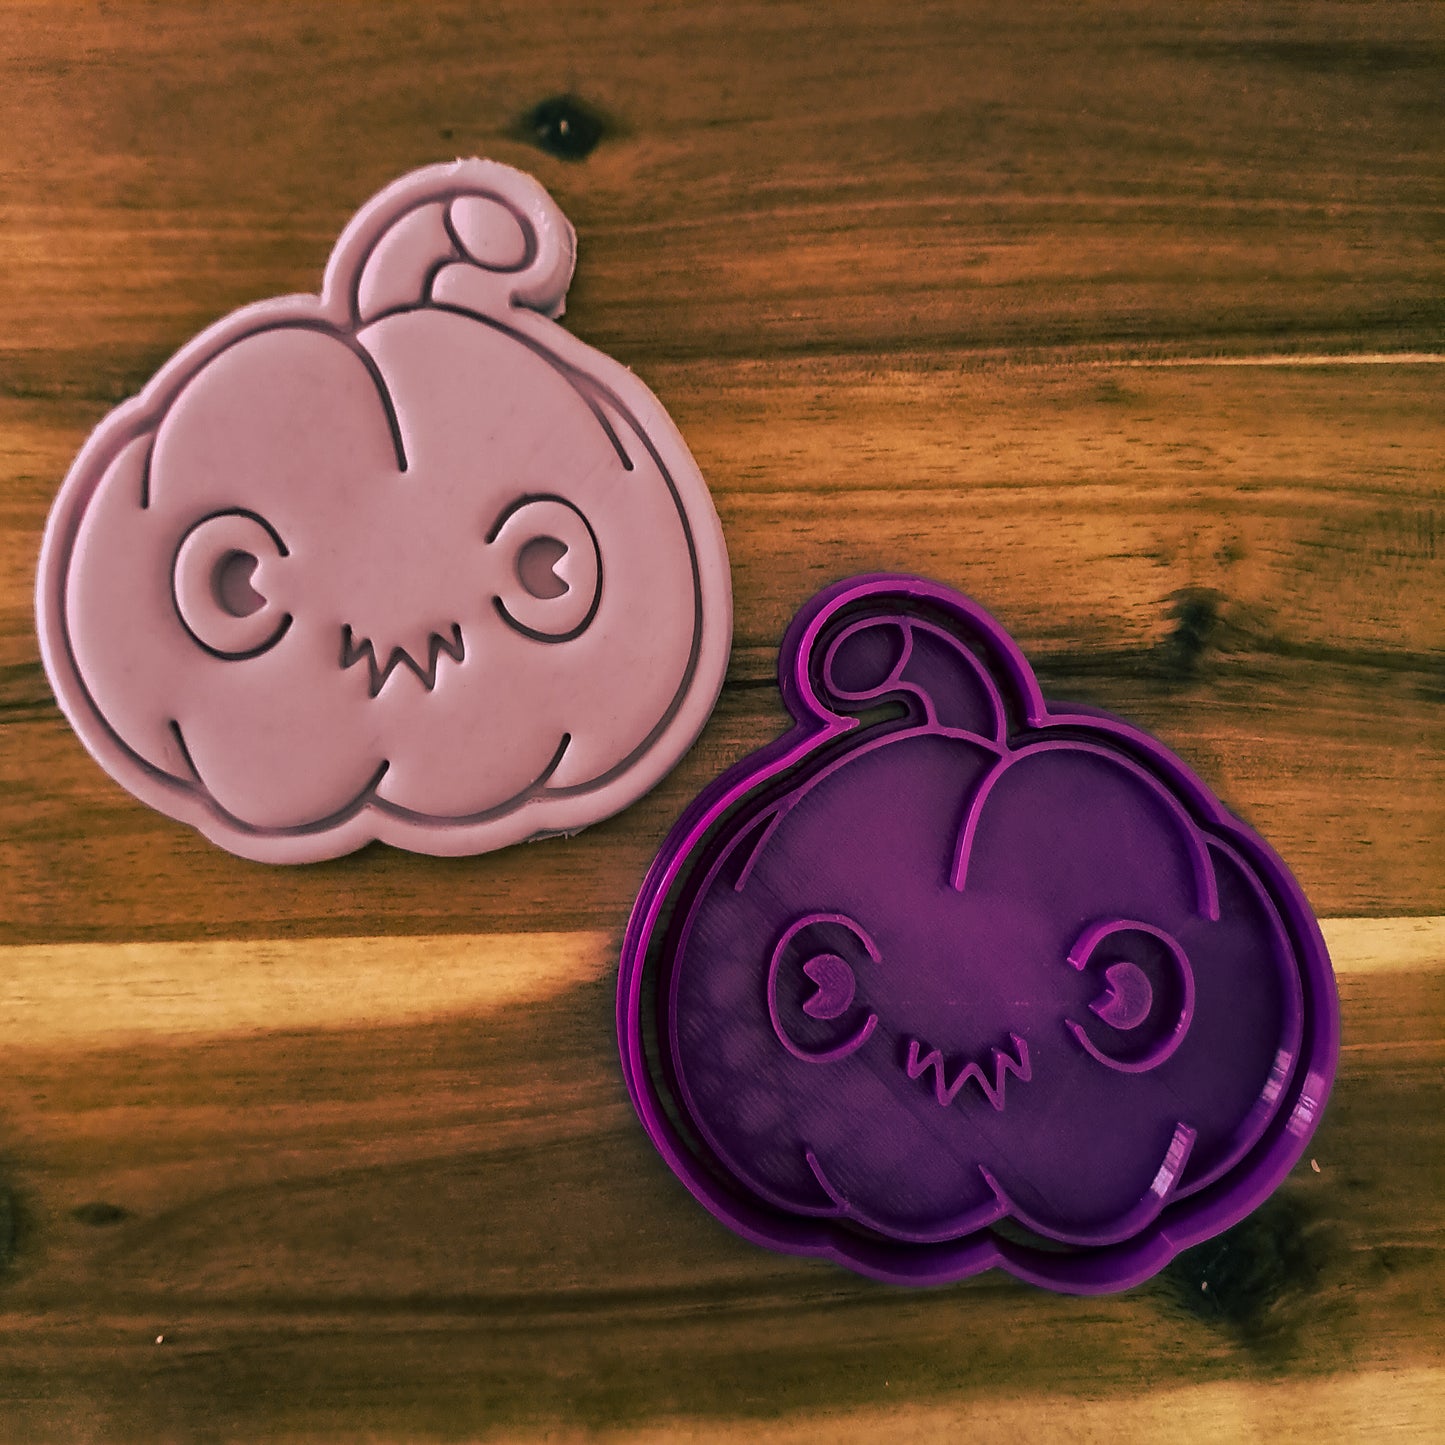 Zucca - Halloween  - Cookies cutter - Formina - Stampo per biscotti o decorazioni in pasta di zucchero per cake design